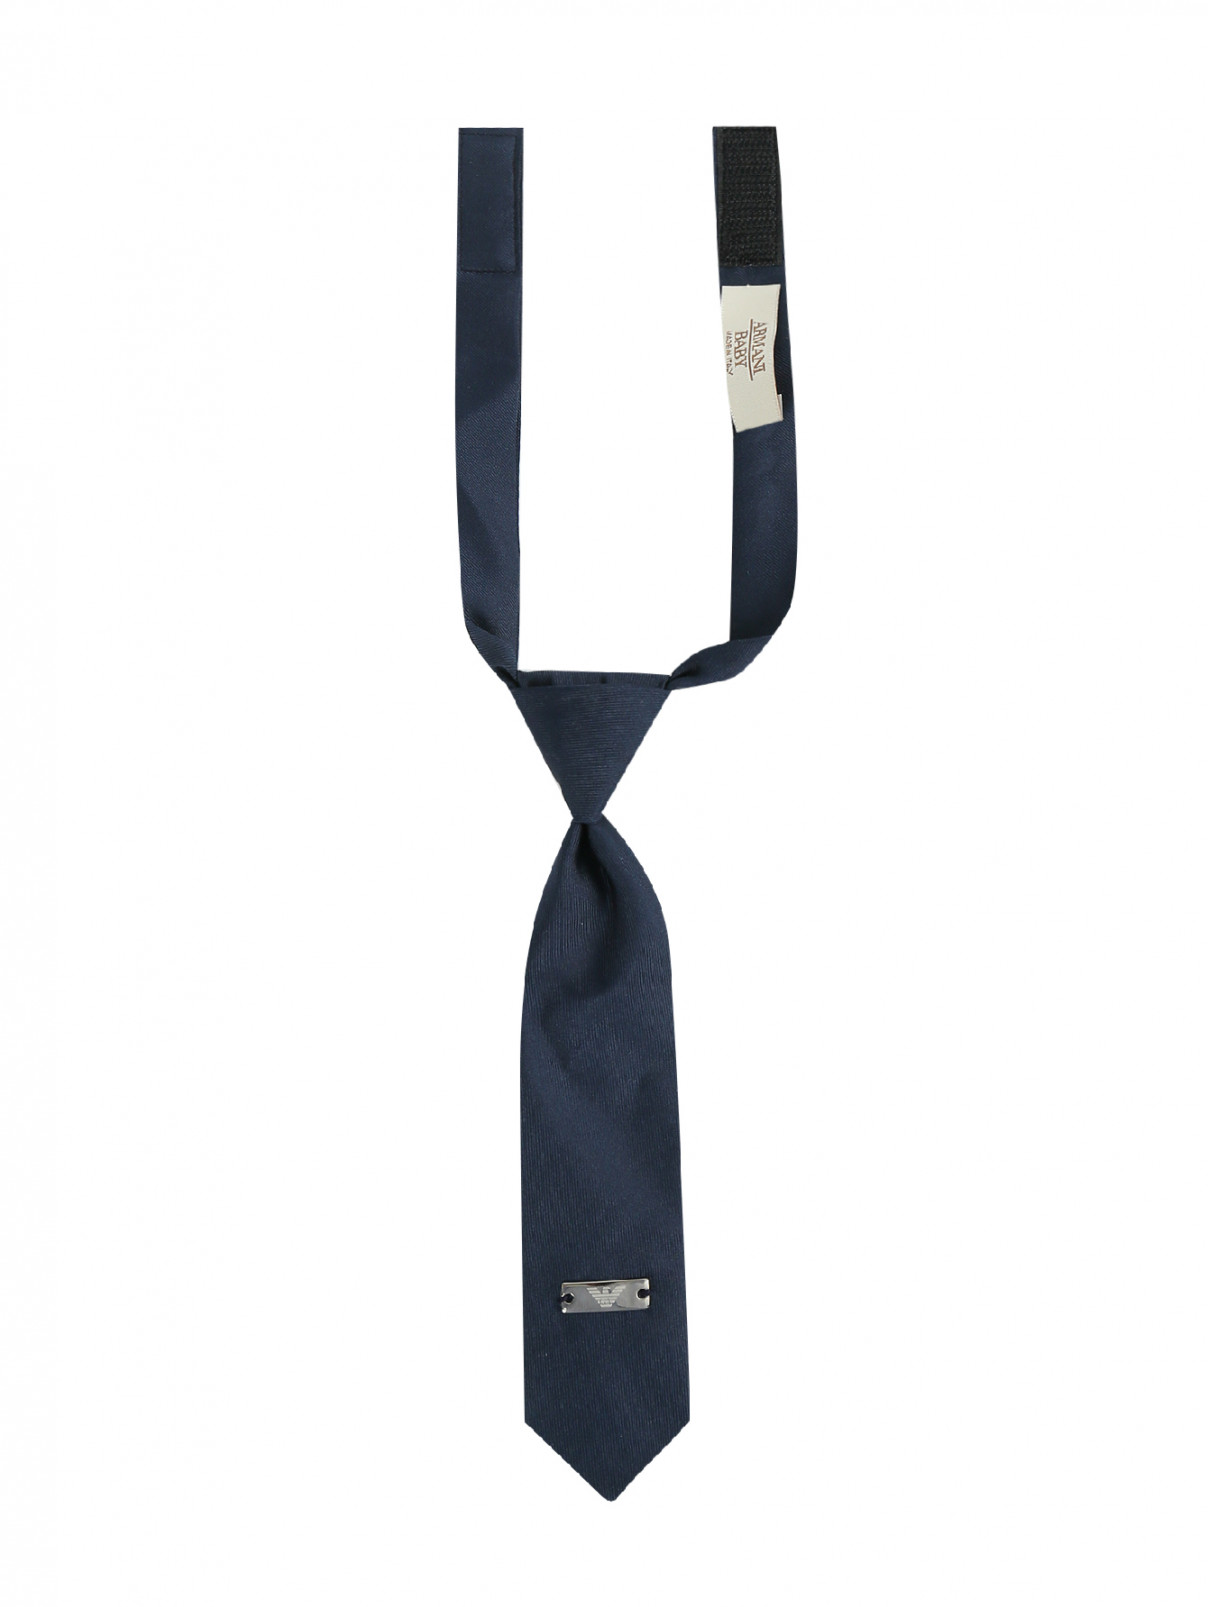 Галстук из шелка на застежке-липучке Armani Junior  –  Общий вид  – Цвет:  Синий